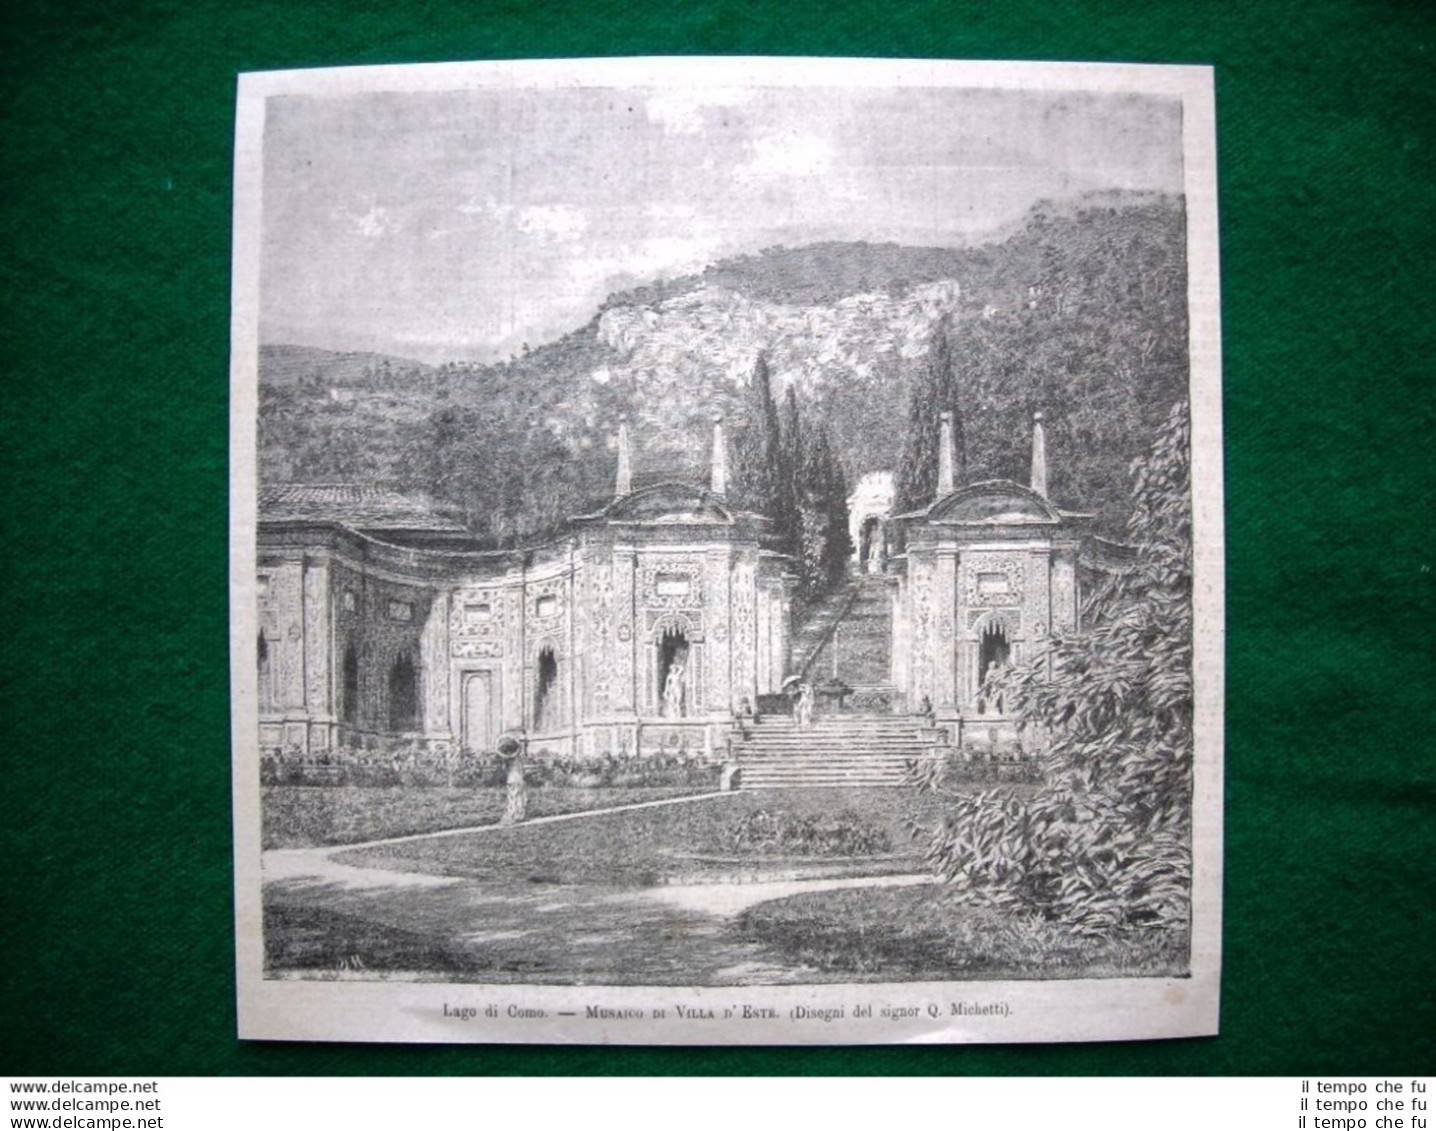 Lago Di Como Nel 1882 - Mosaico Di Villa D'Este (disegni Del Signor Q. Michetti) - Avant 1900